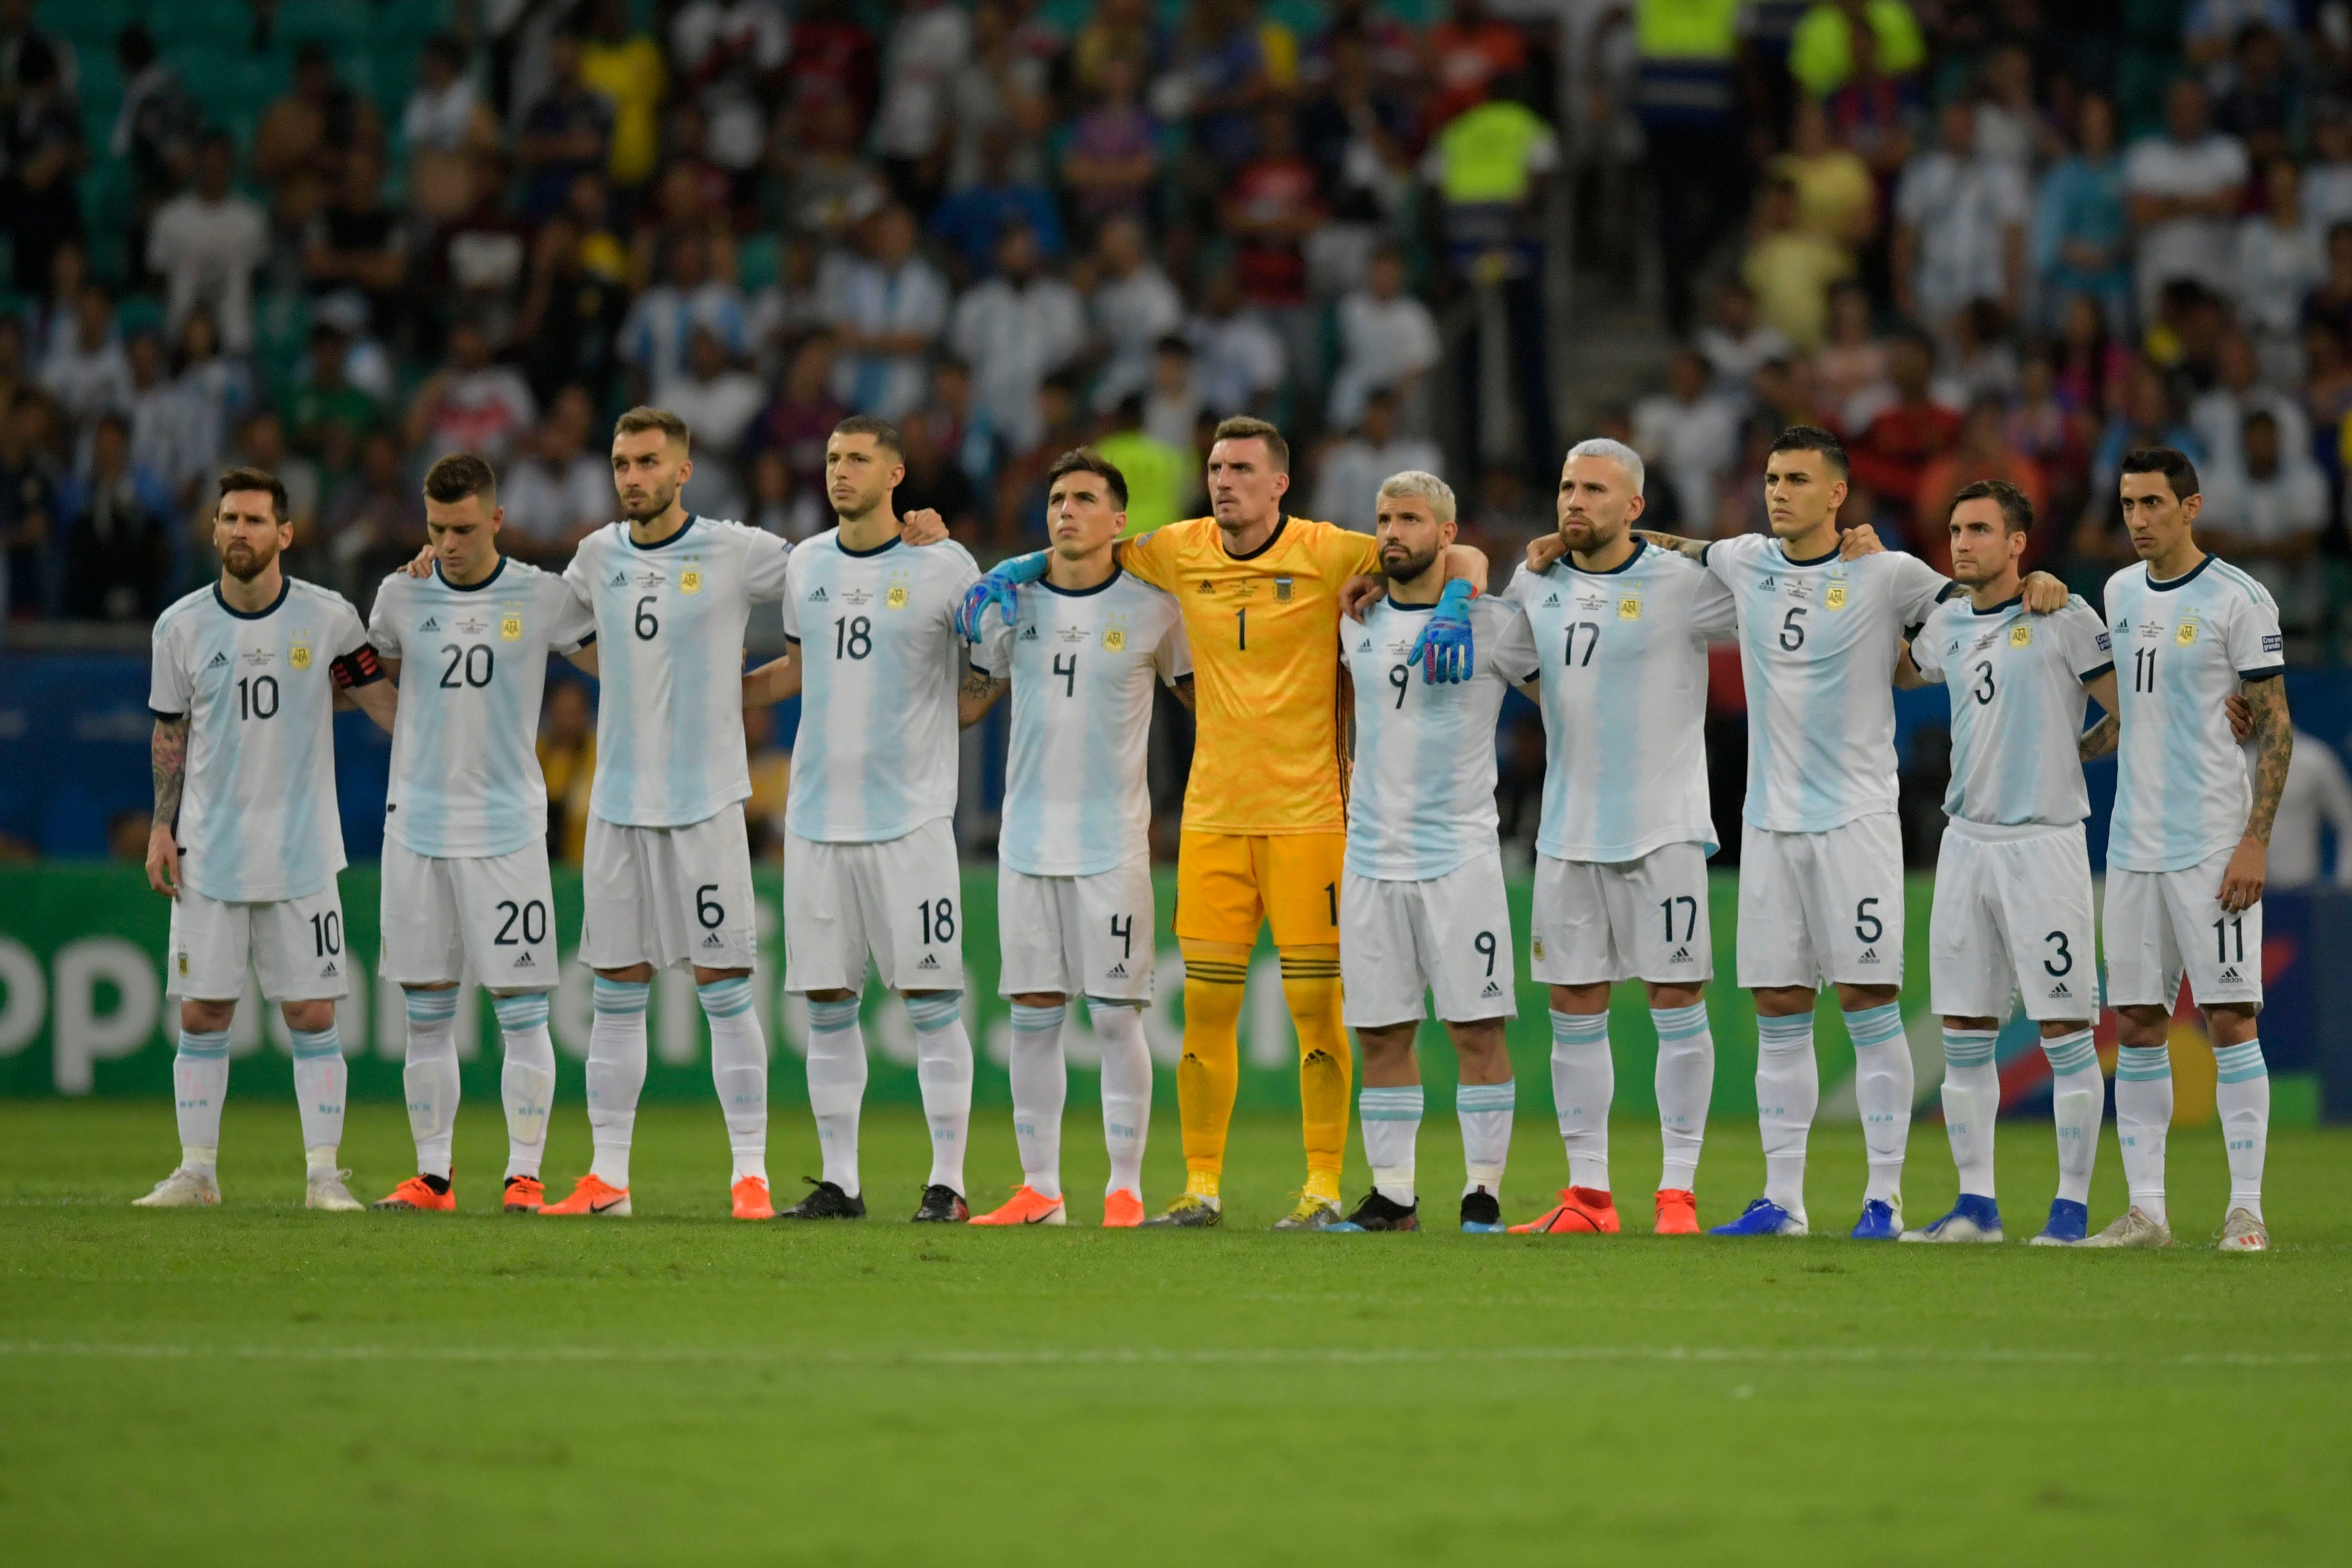 Argentina en la América 2019: resultados y plantel | Espana